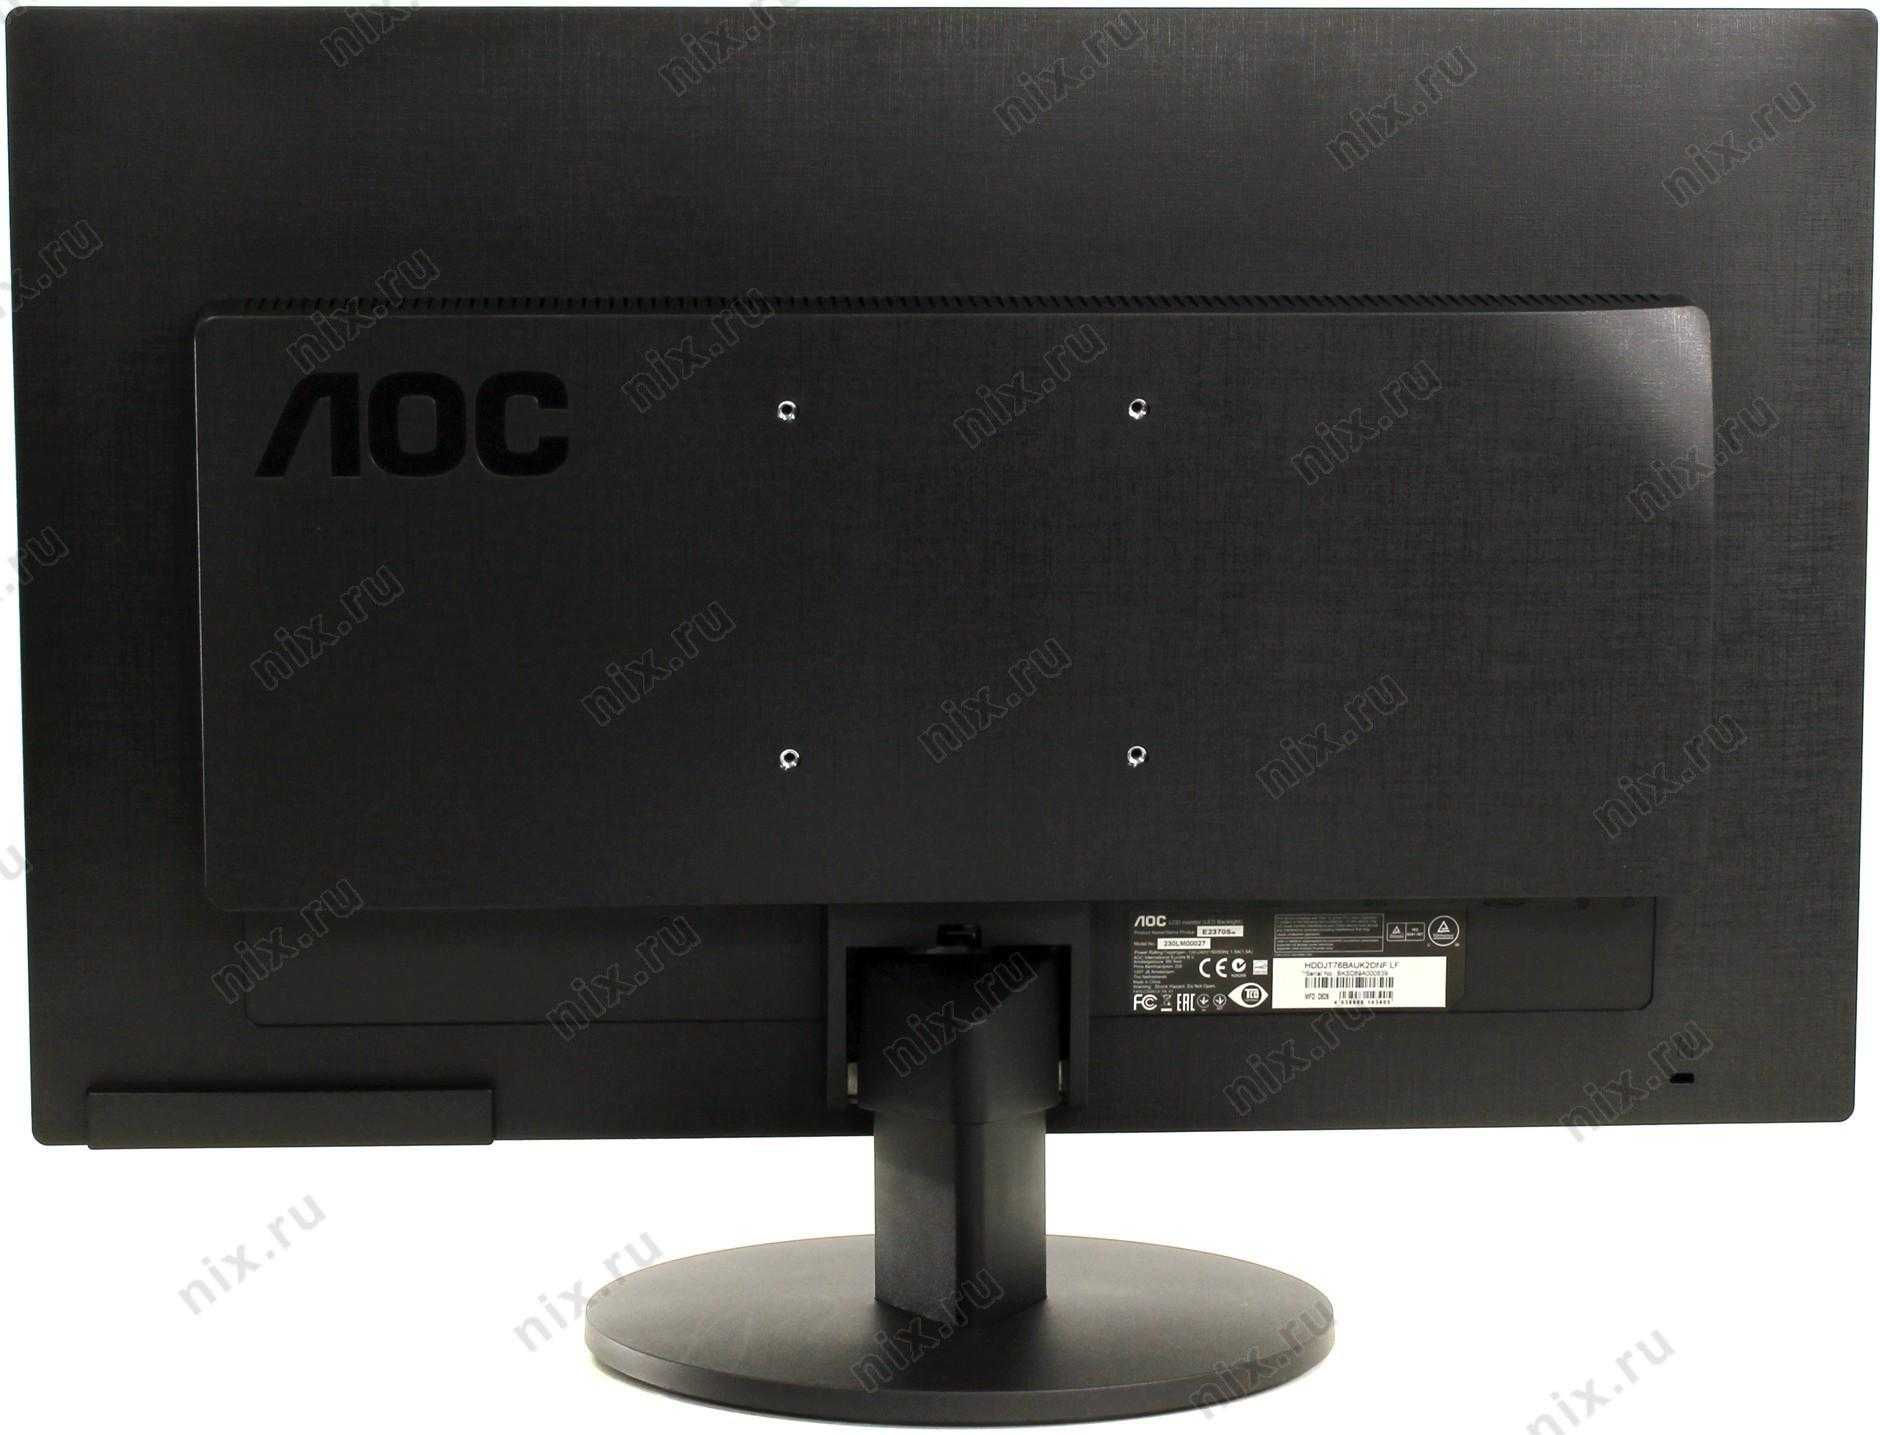 Жк монитор 23" aoc p2370sh — купить, цена и характеристики, отзывы